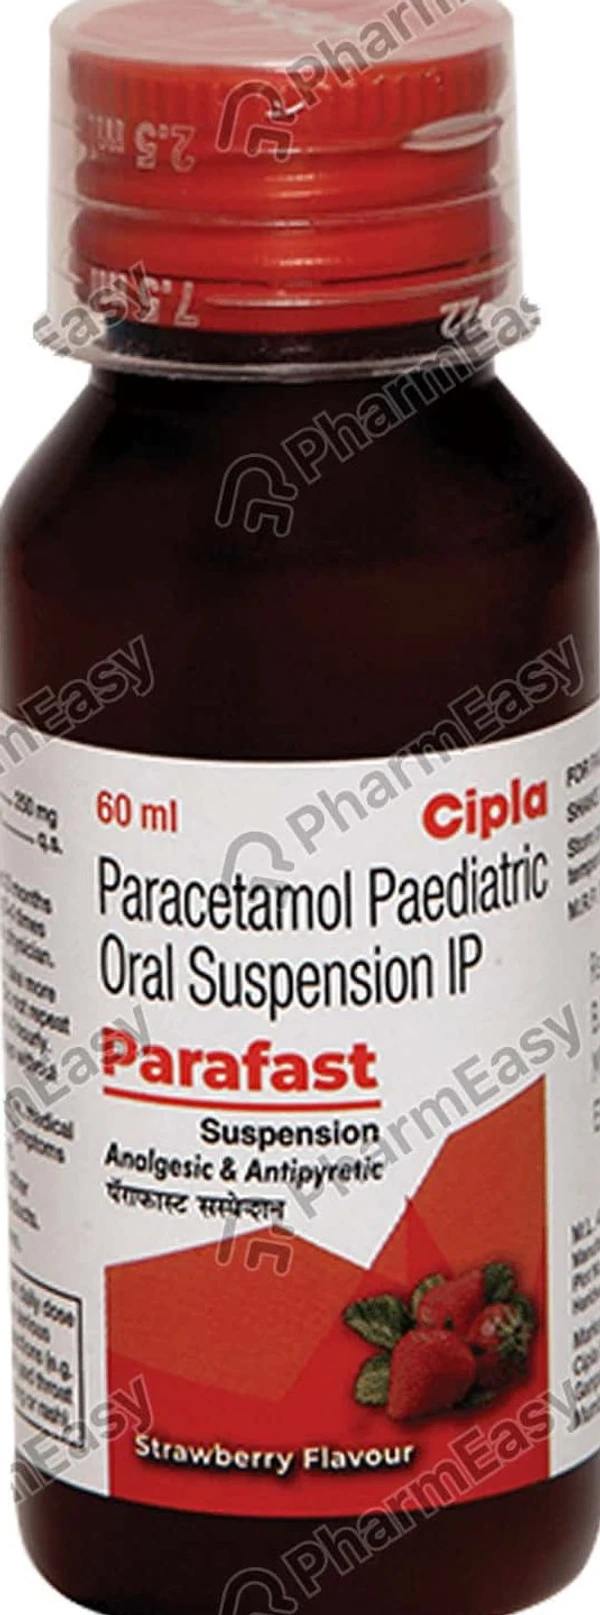 Parafast 250mg Oral Suspension - 60ml